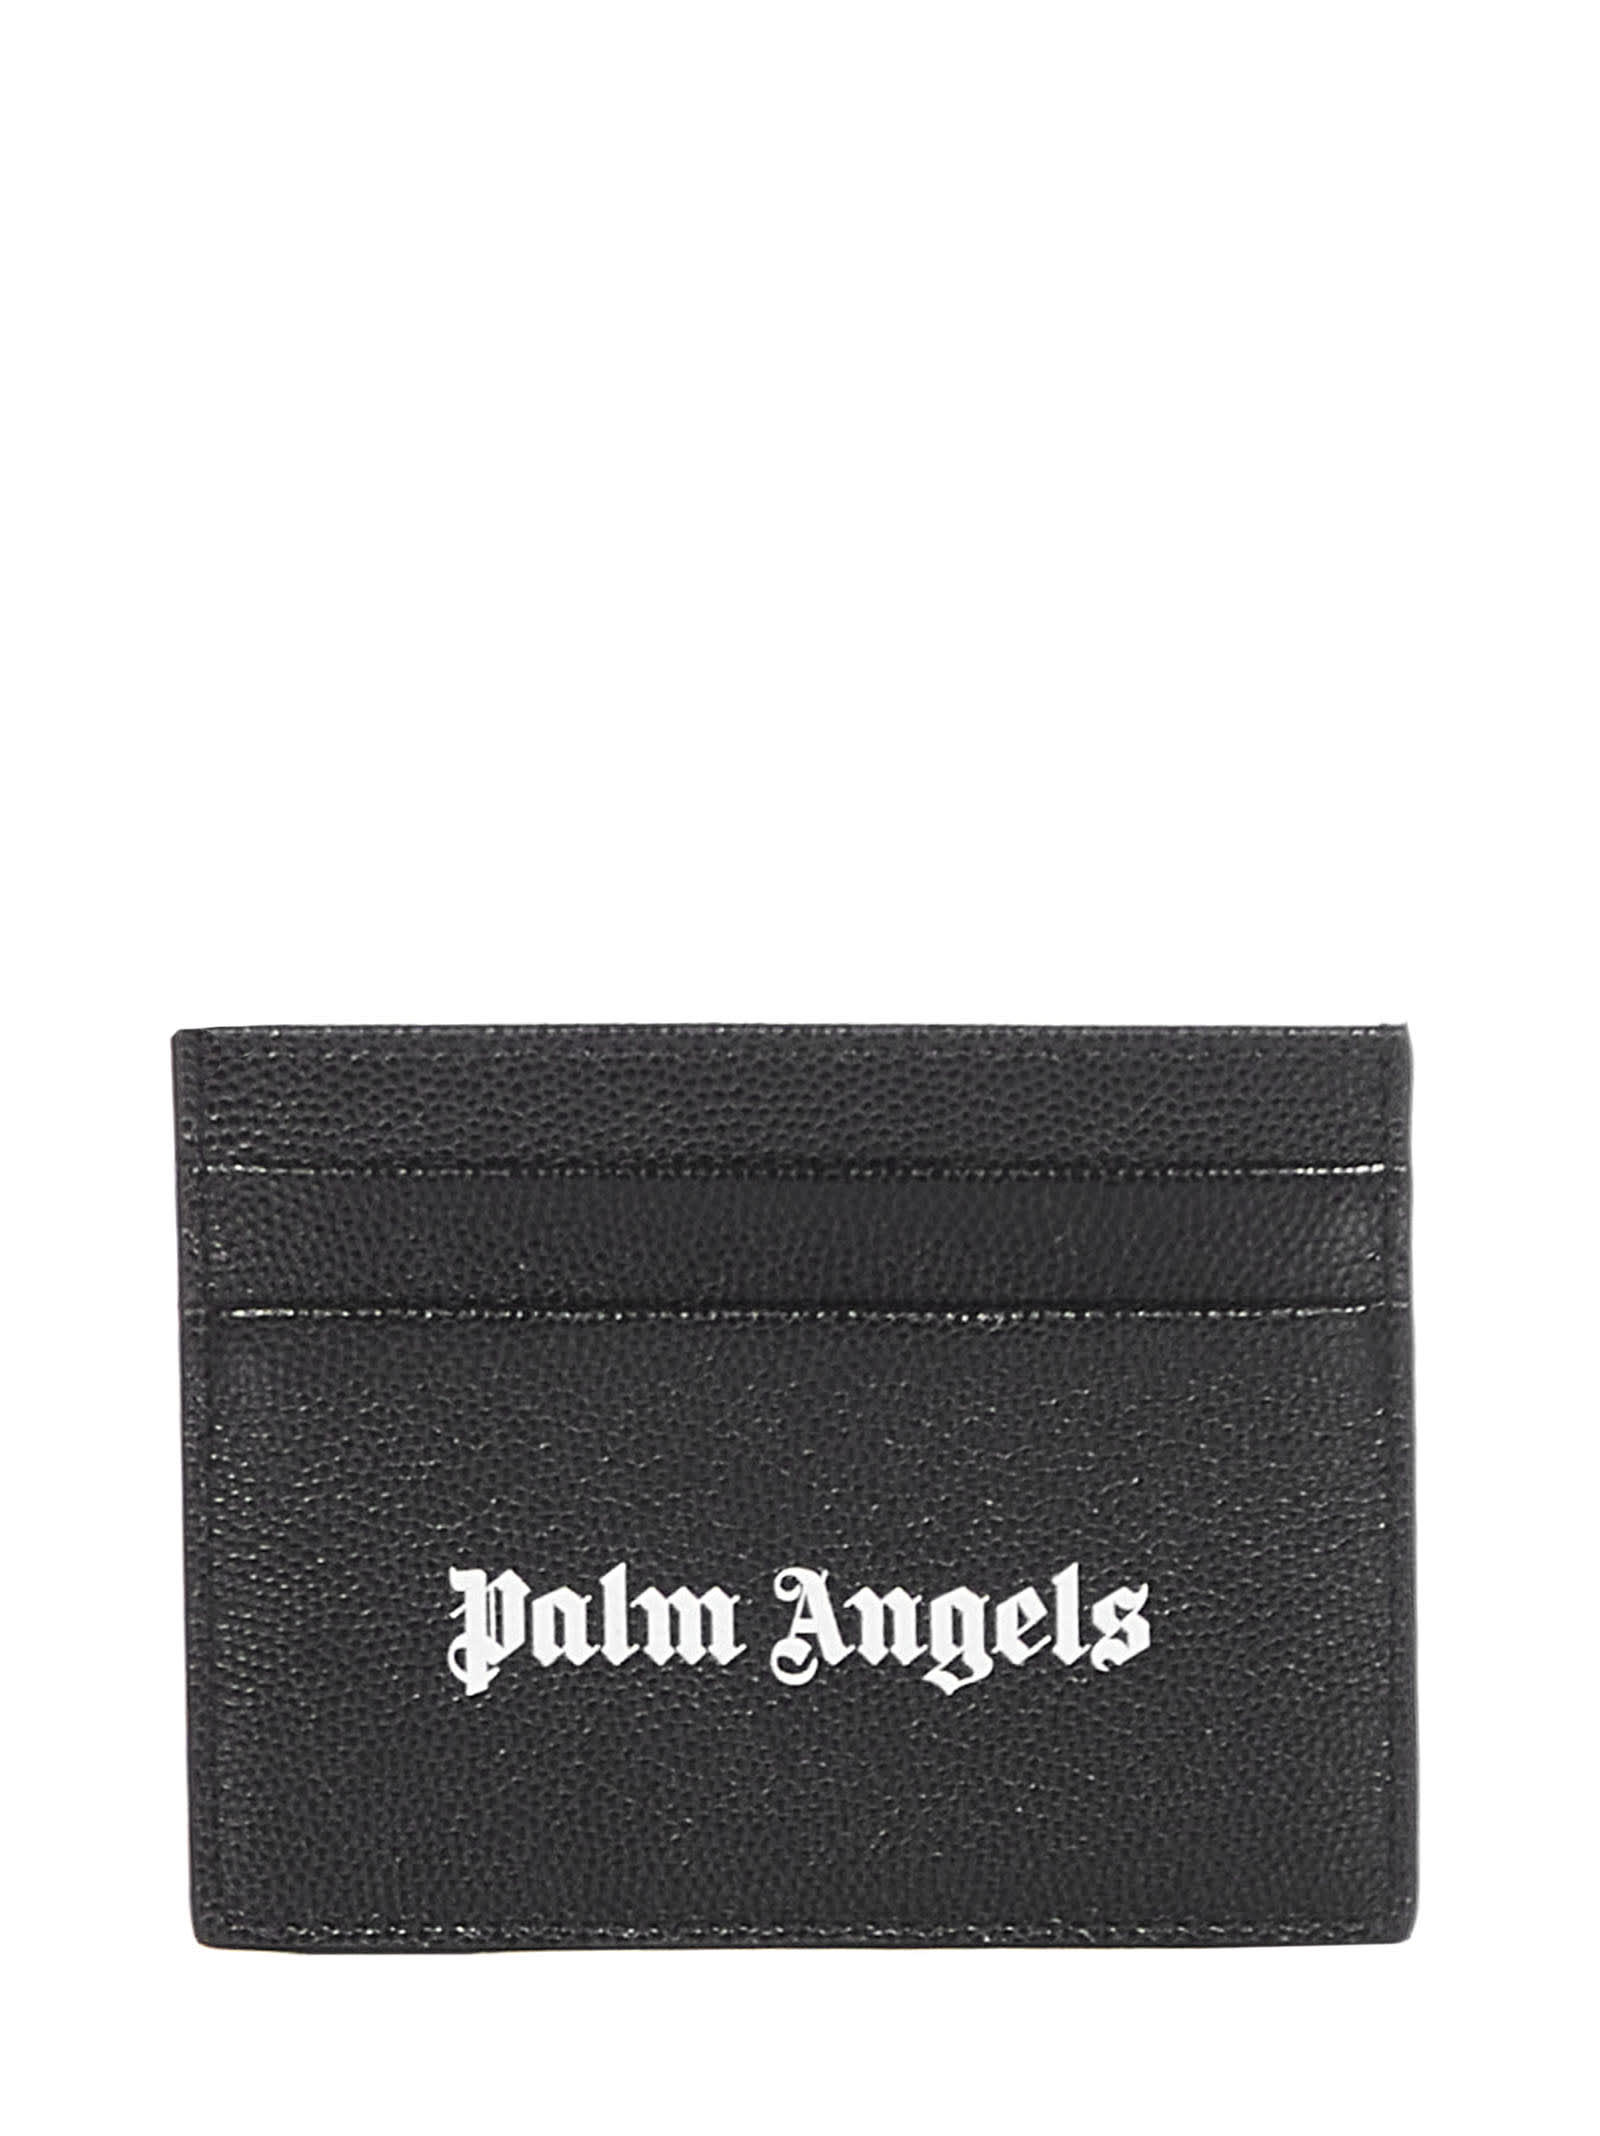 Palm Angels Cardholder